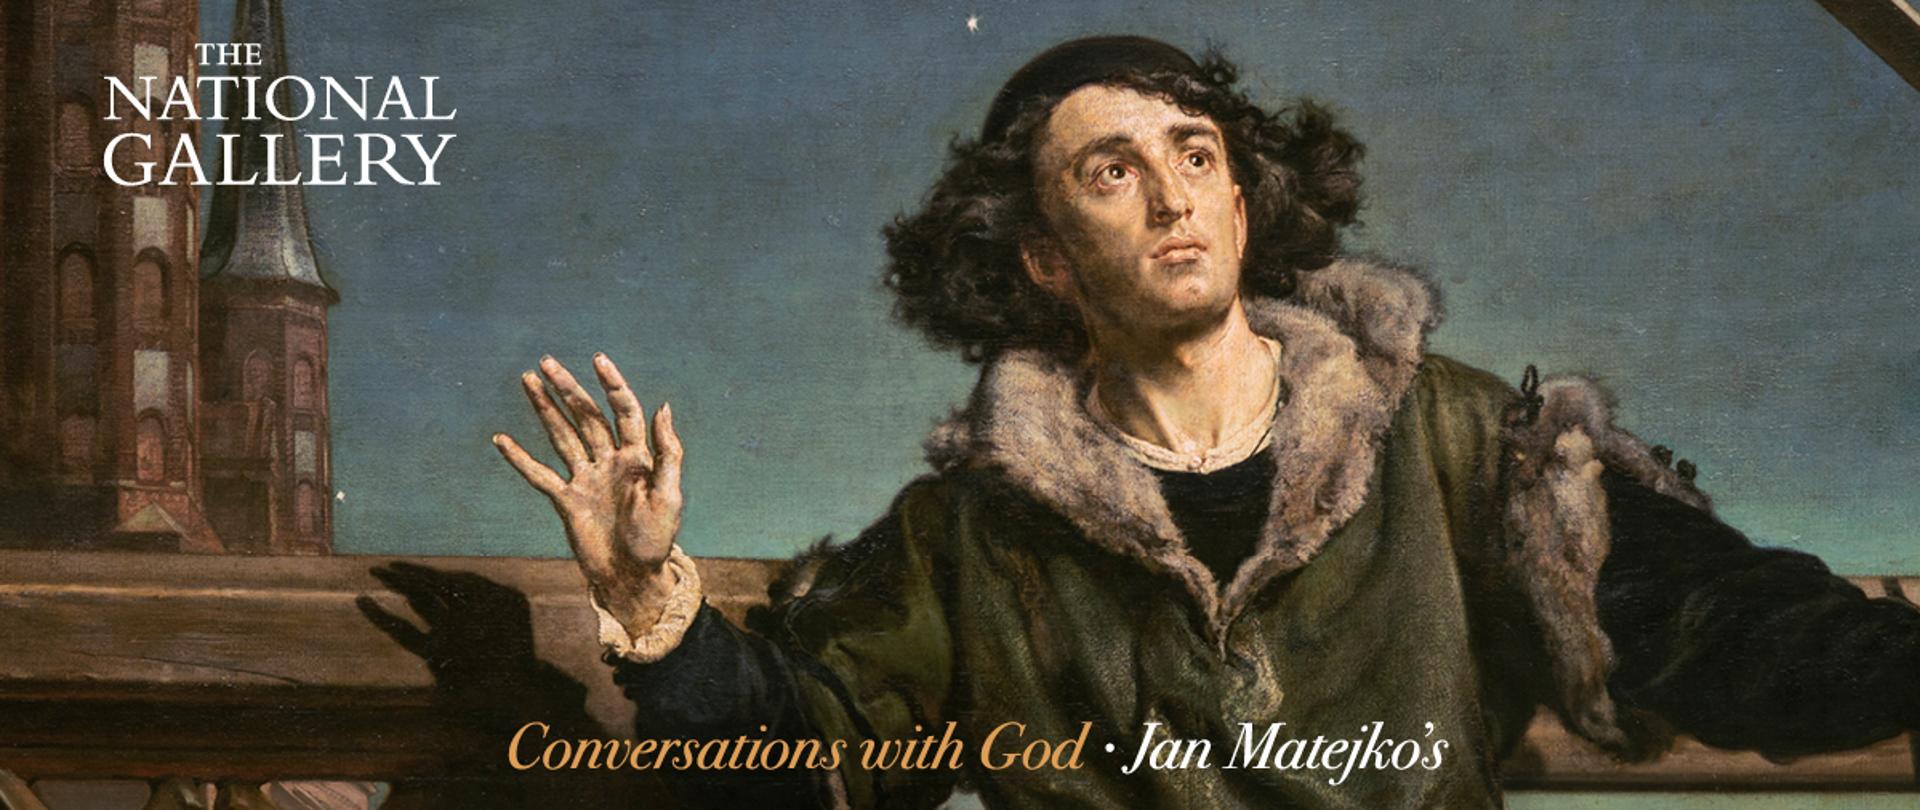 Jan Matejko "Copernicus" copyright Instytut Kultury Polskiej w Londynie